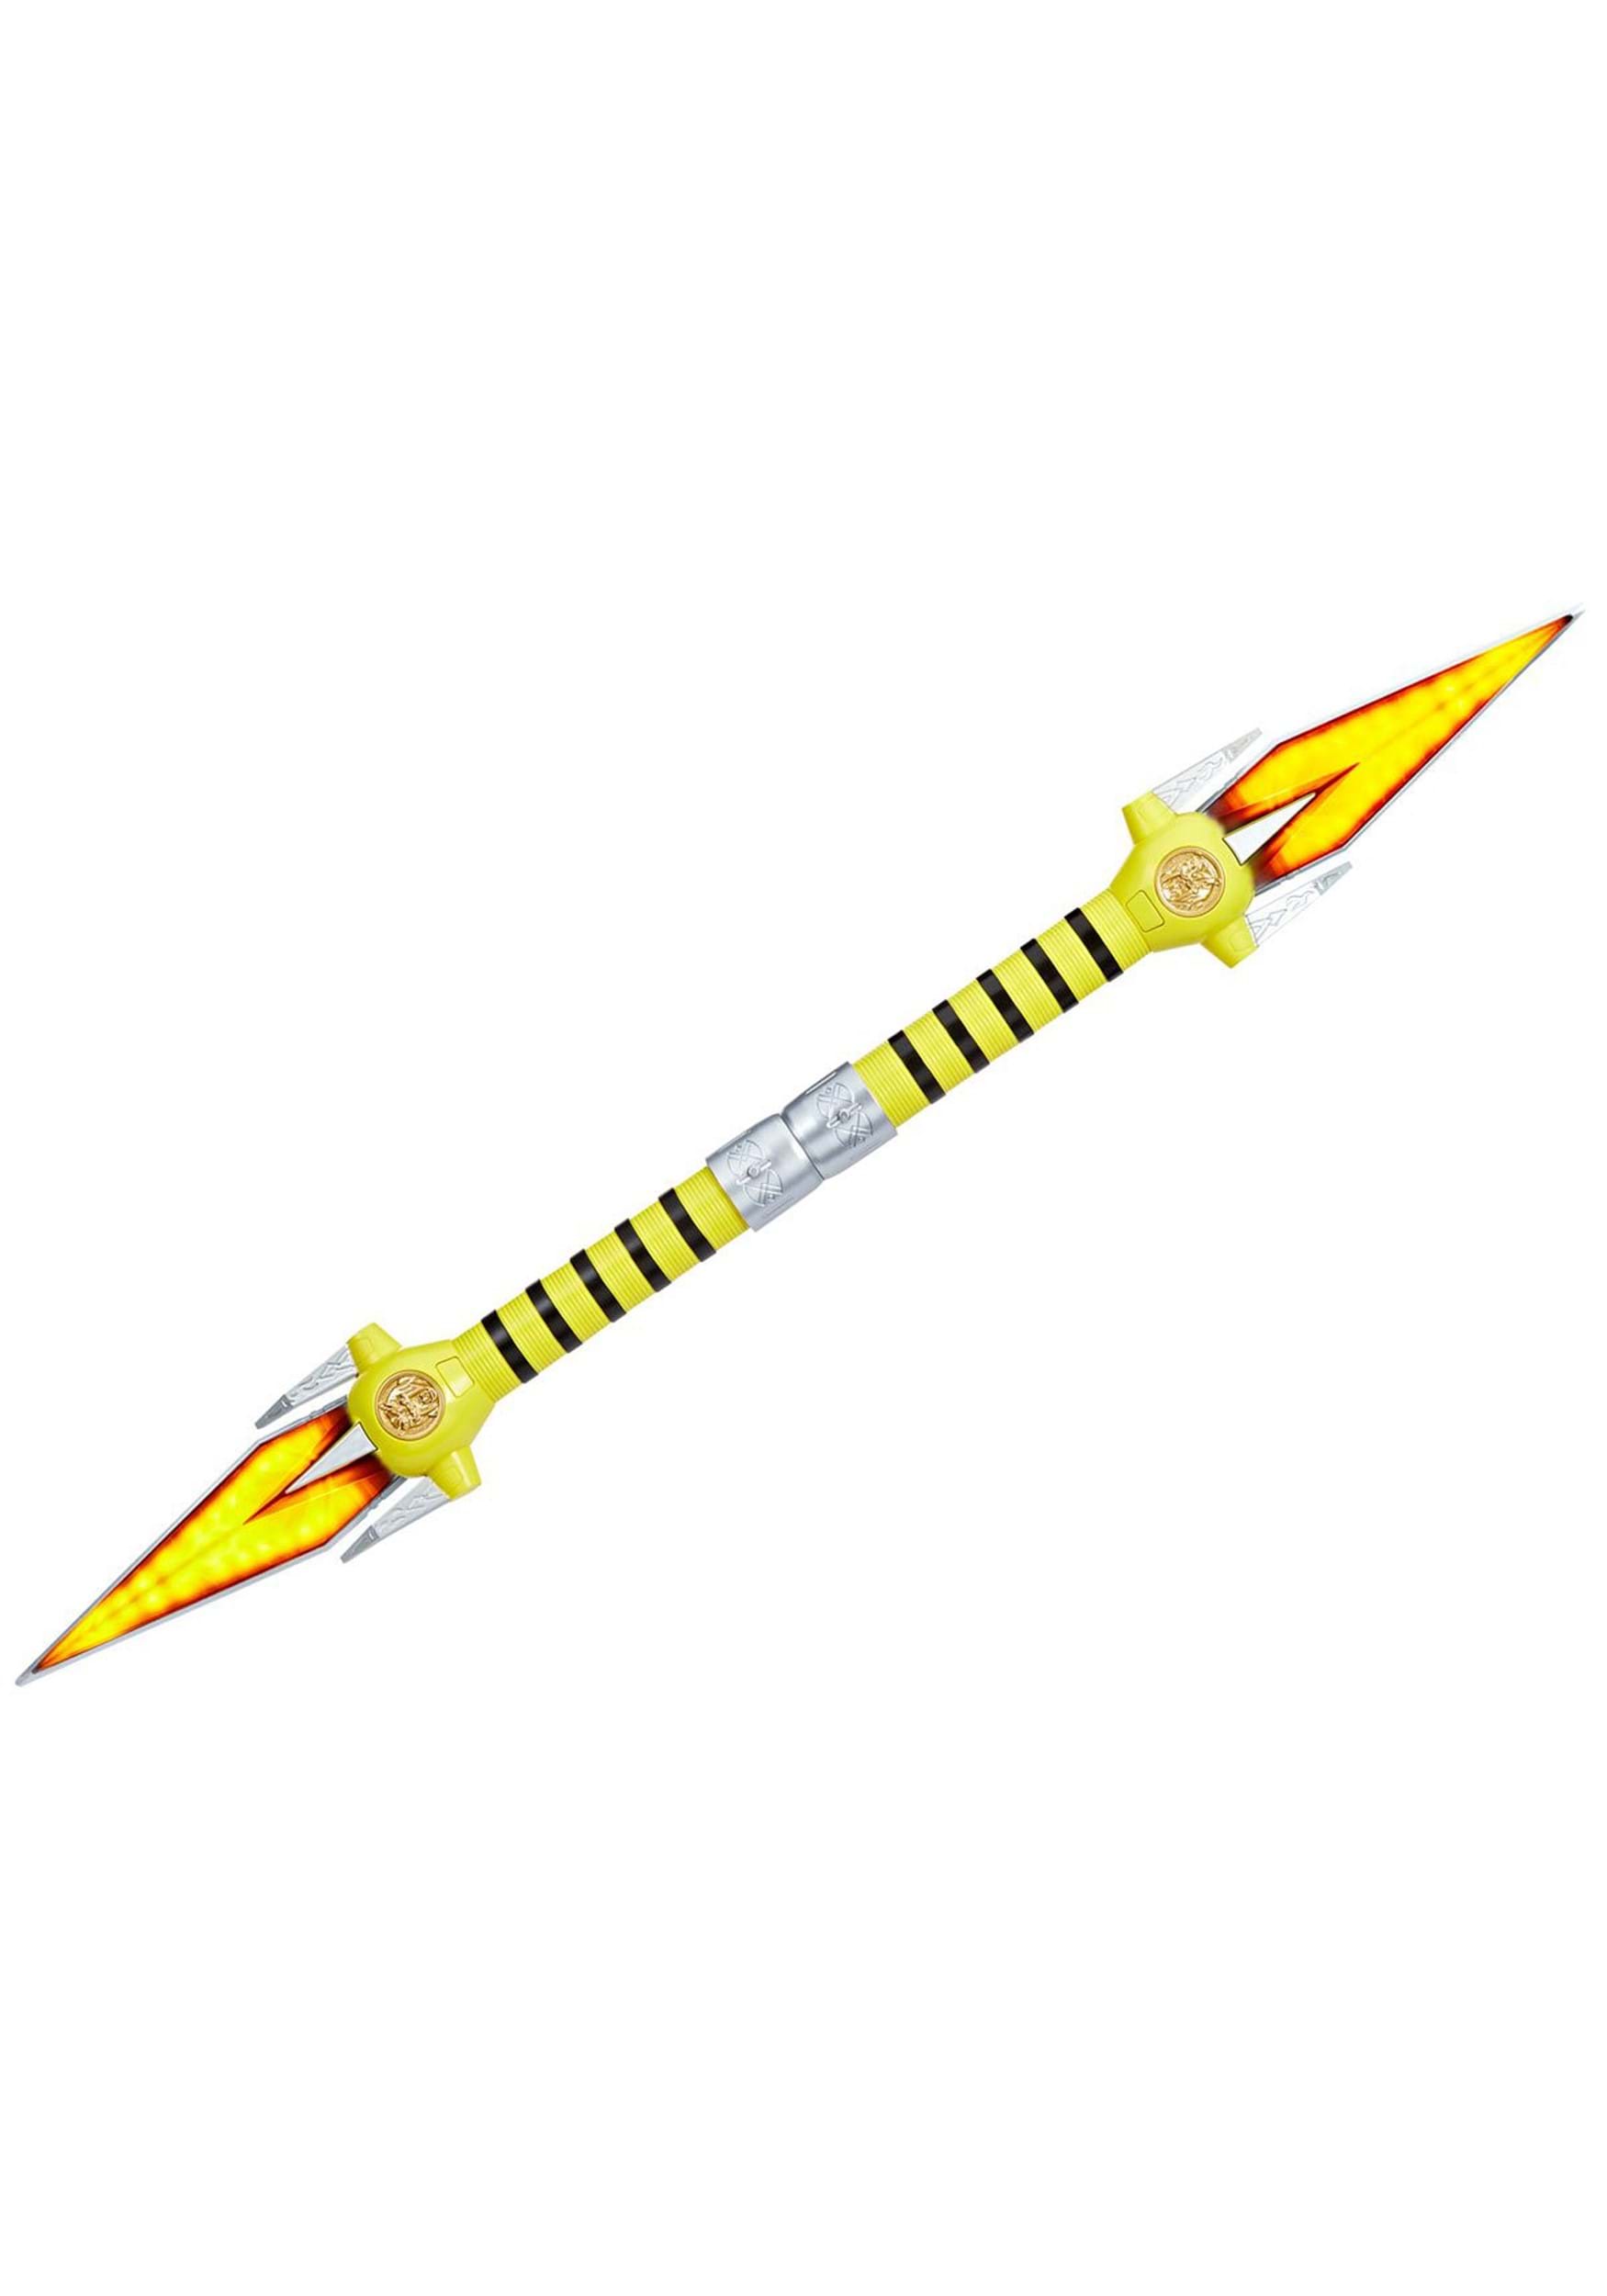 Power Rangers Lightning Collection Yellow Ranger Power Daggers Prop Replica